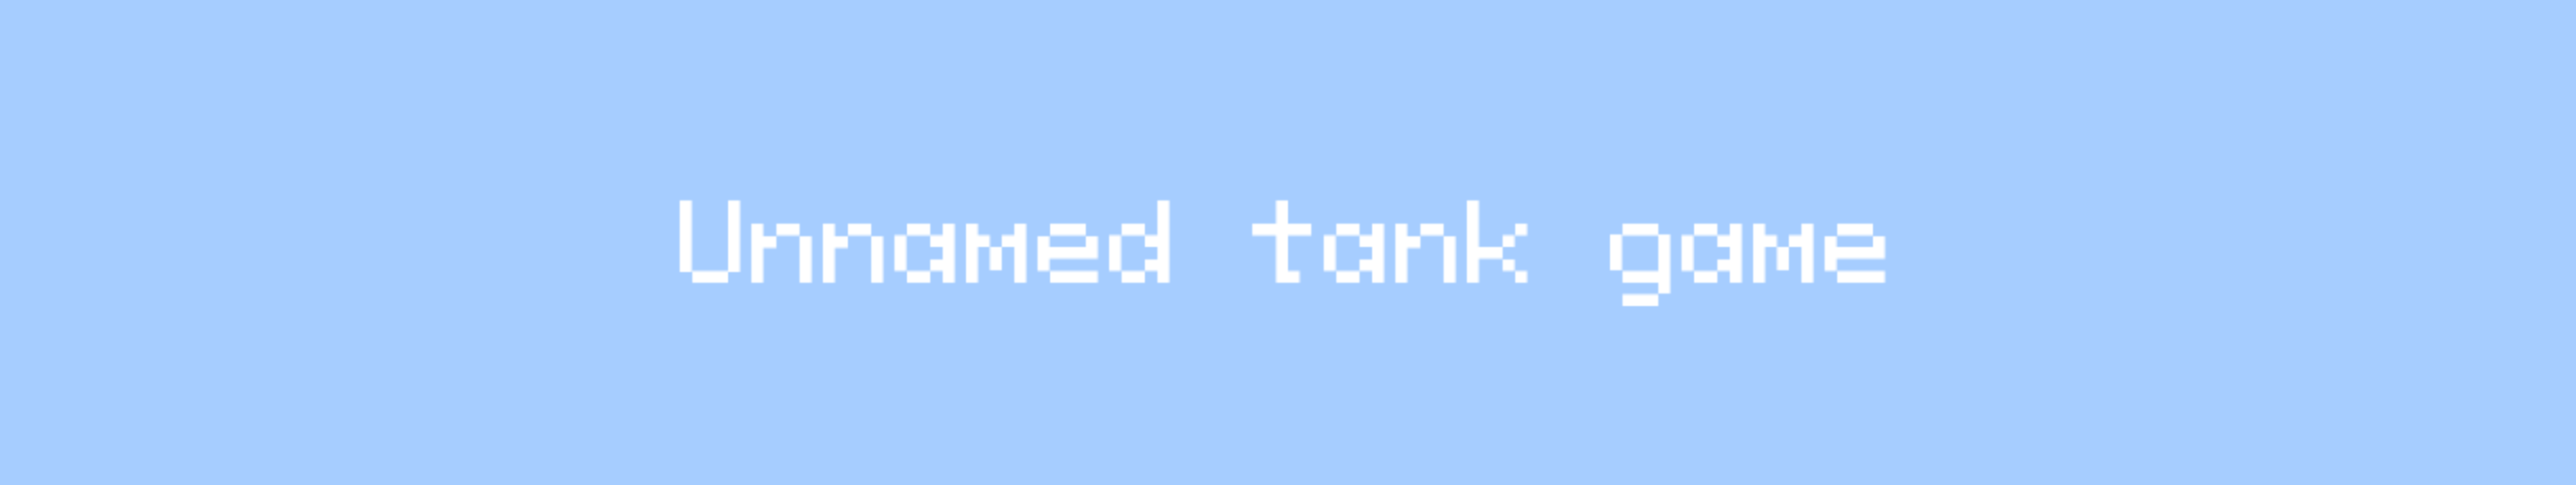 Tank game